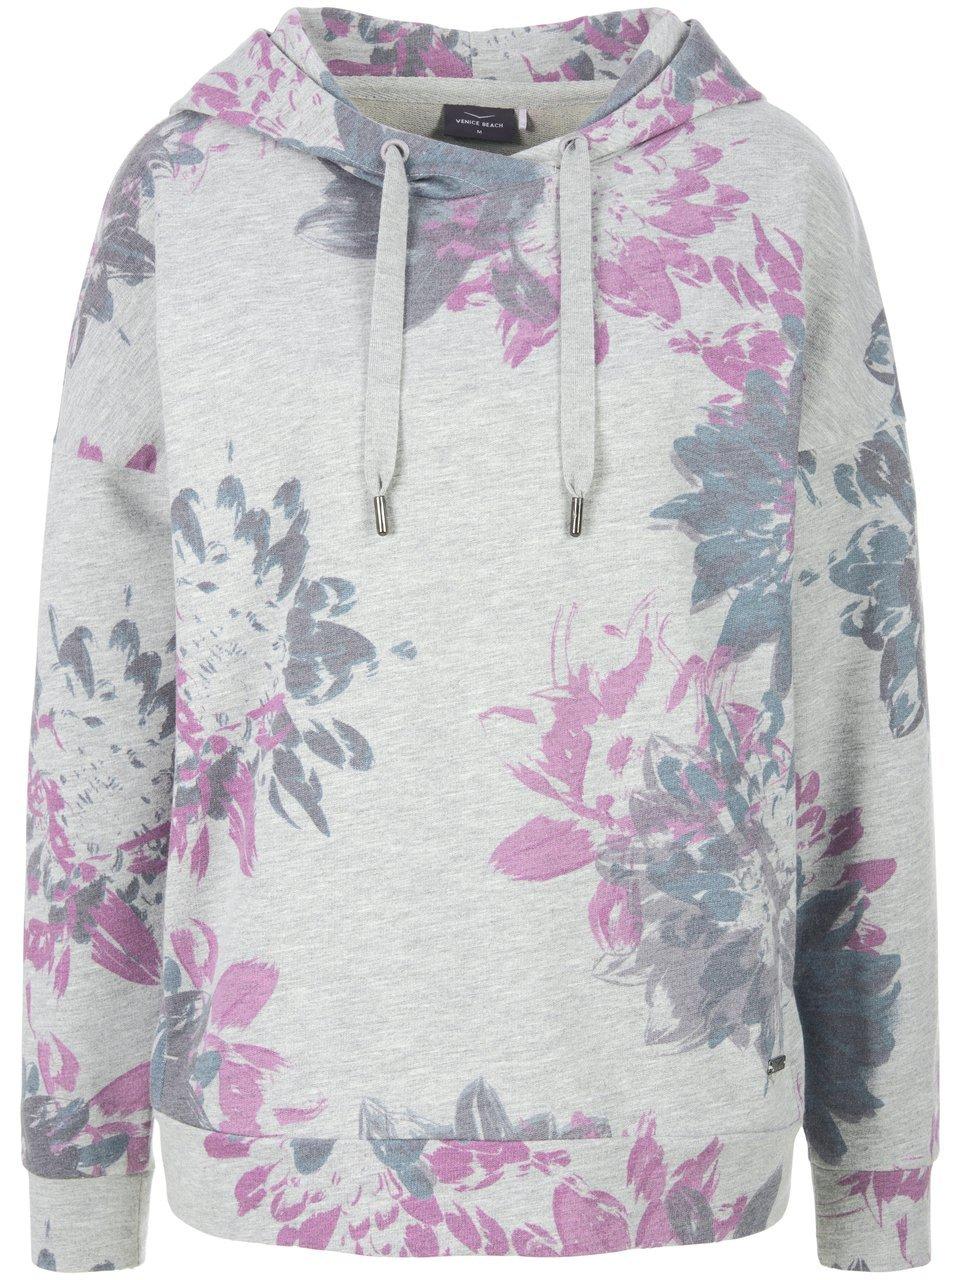 Sweatshirt capuchon en bloemenprint Van Venice Beach grijs